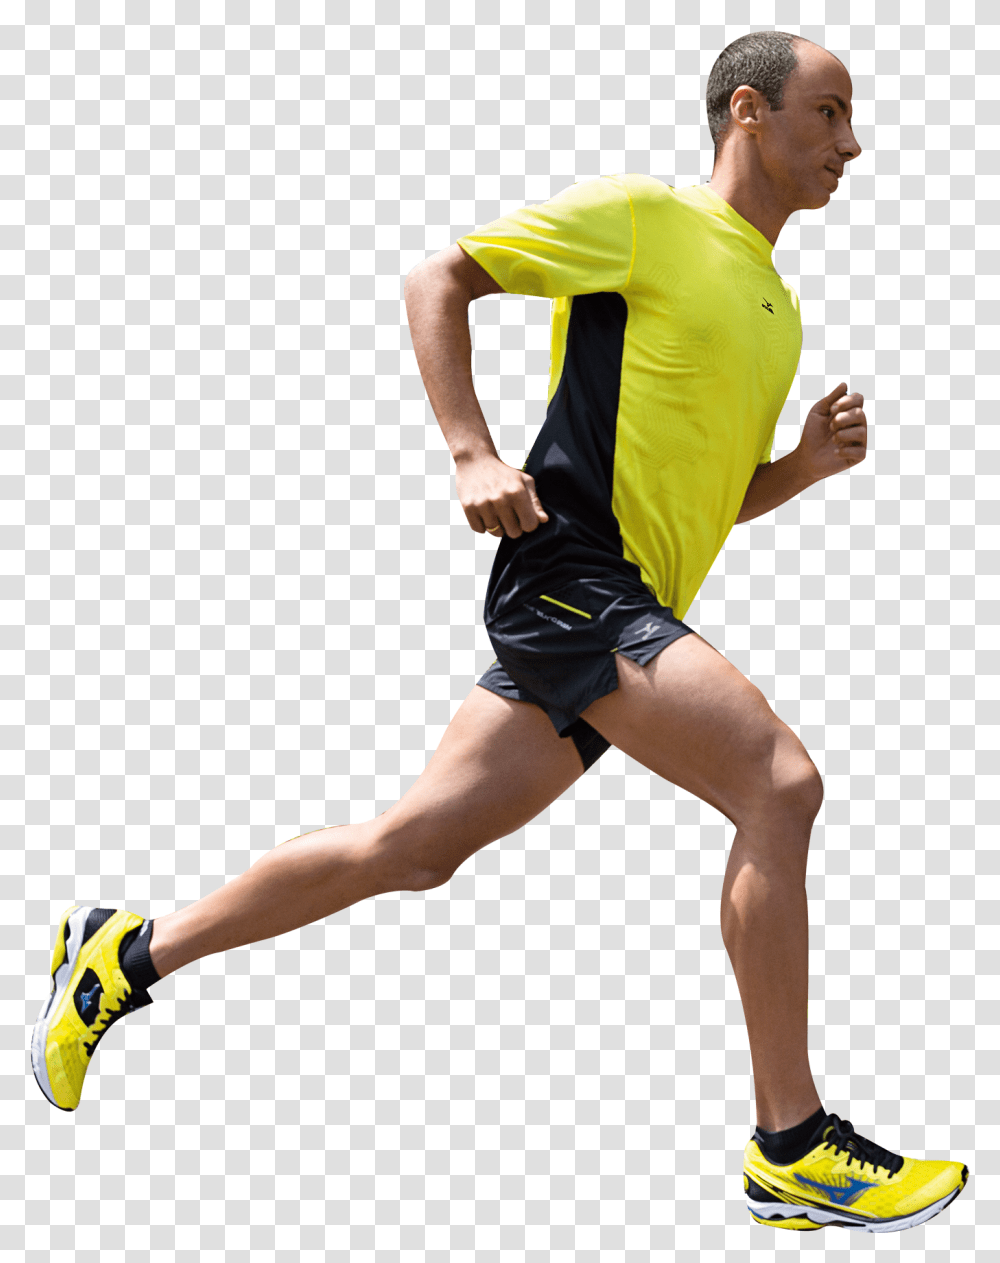 Running Man Free Running Man, Shorts, Shoe, Footwear Transparent Png